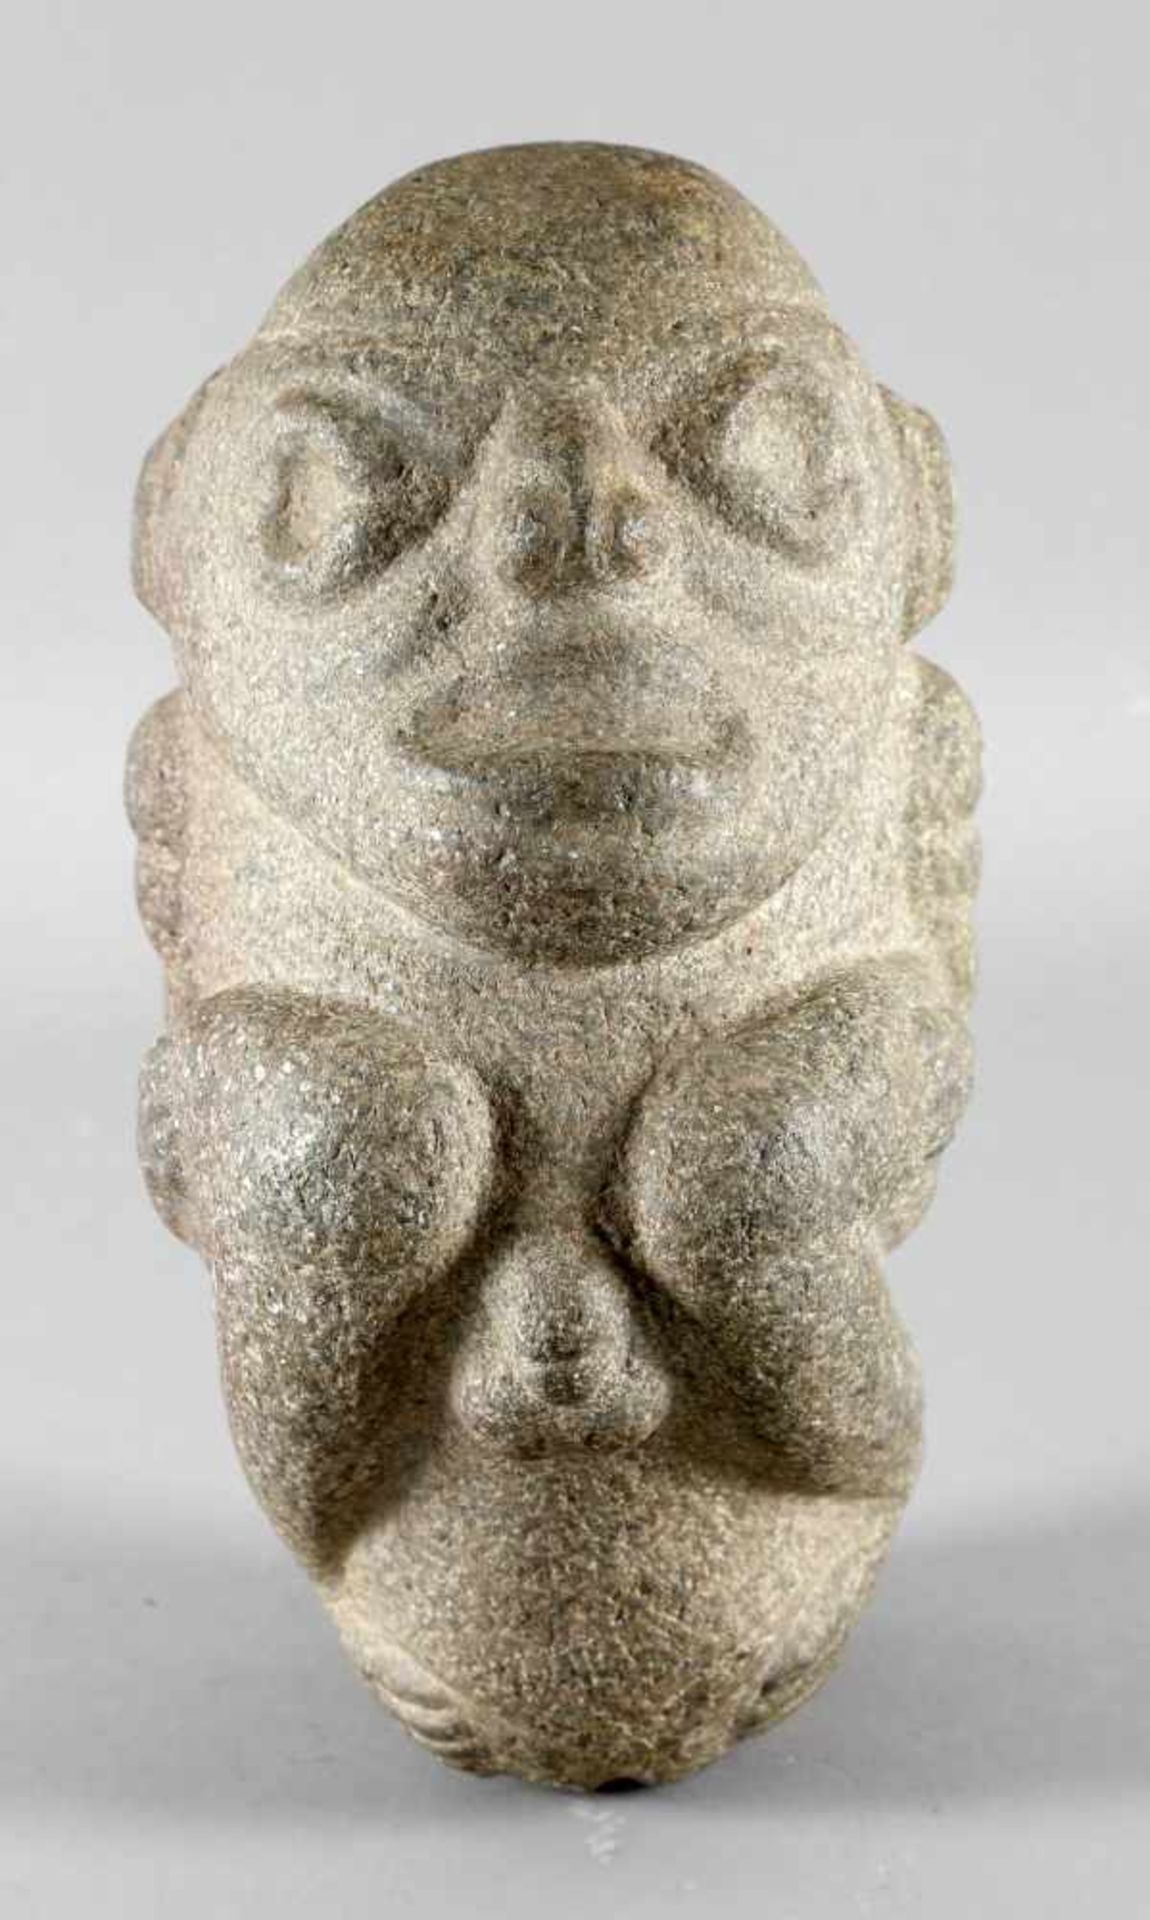 Hockender Mann, Kultur der Taino, Dominikanische Republik, ca. 1000-1500 n. Chr.mit deutlich